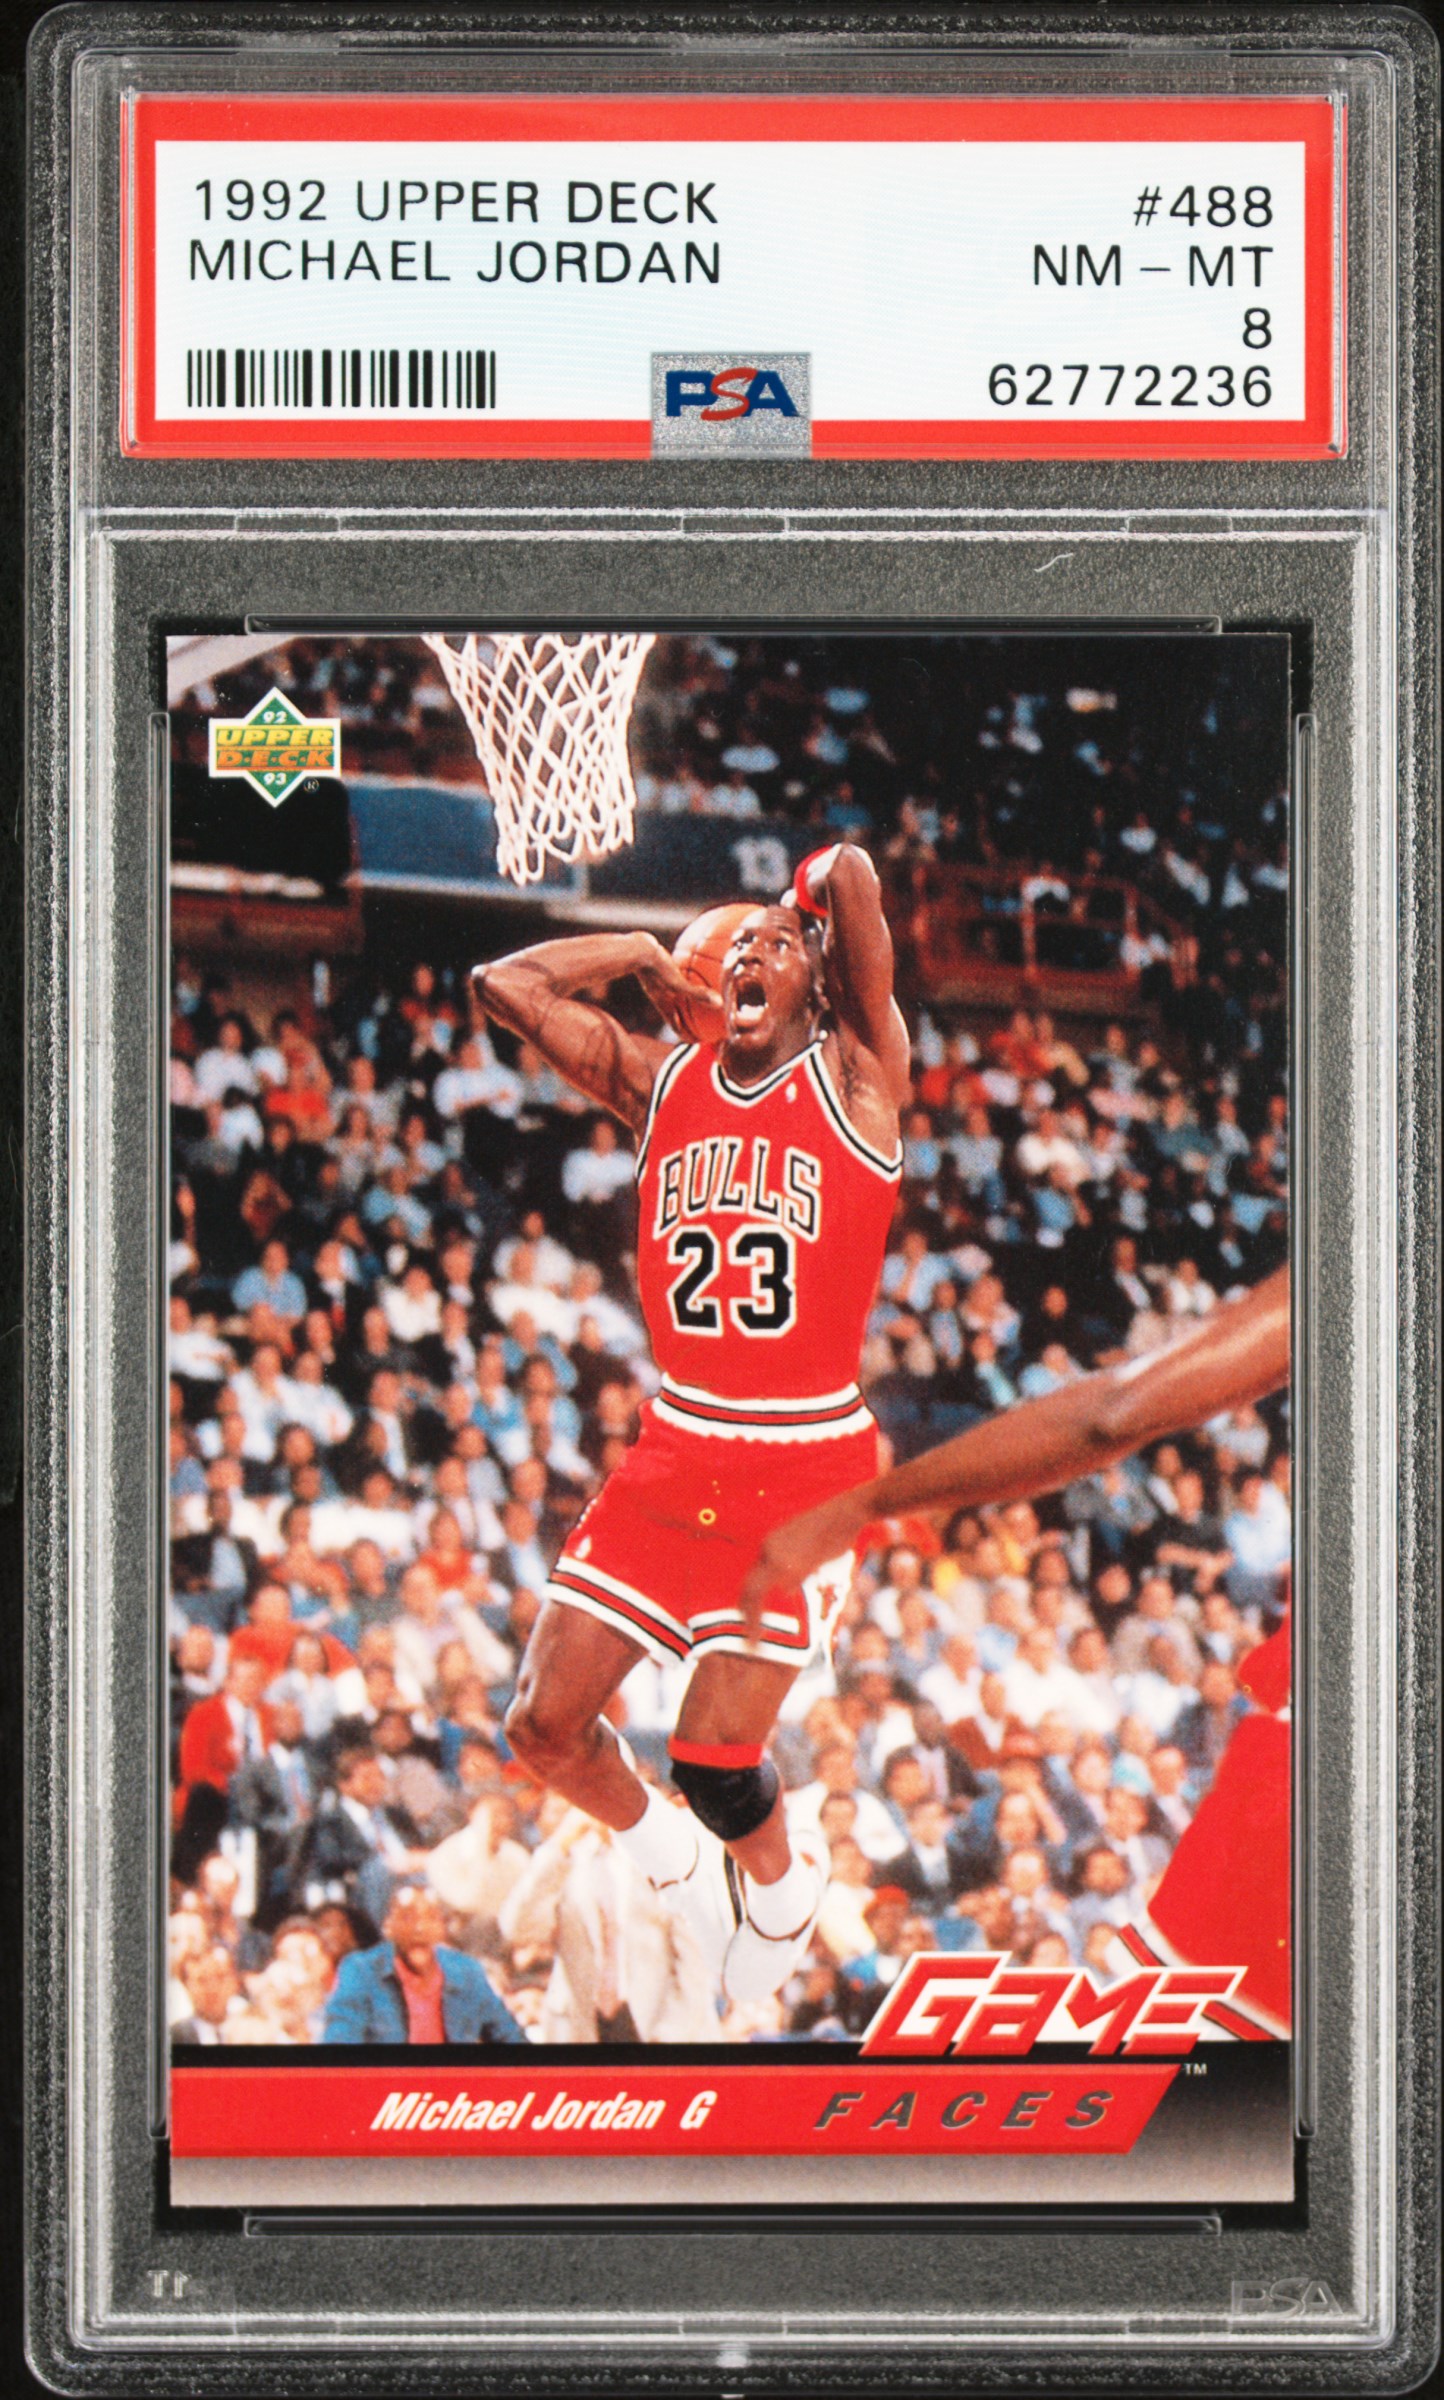 1992 Upper Deck 488 Michael Jordan PSA 8